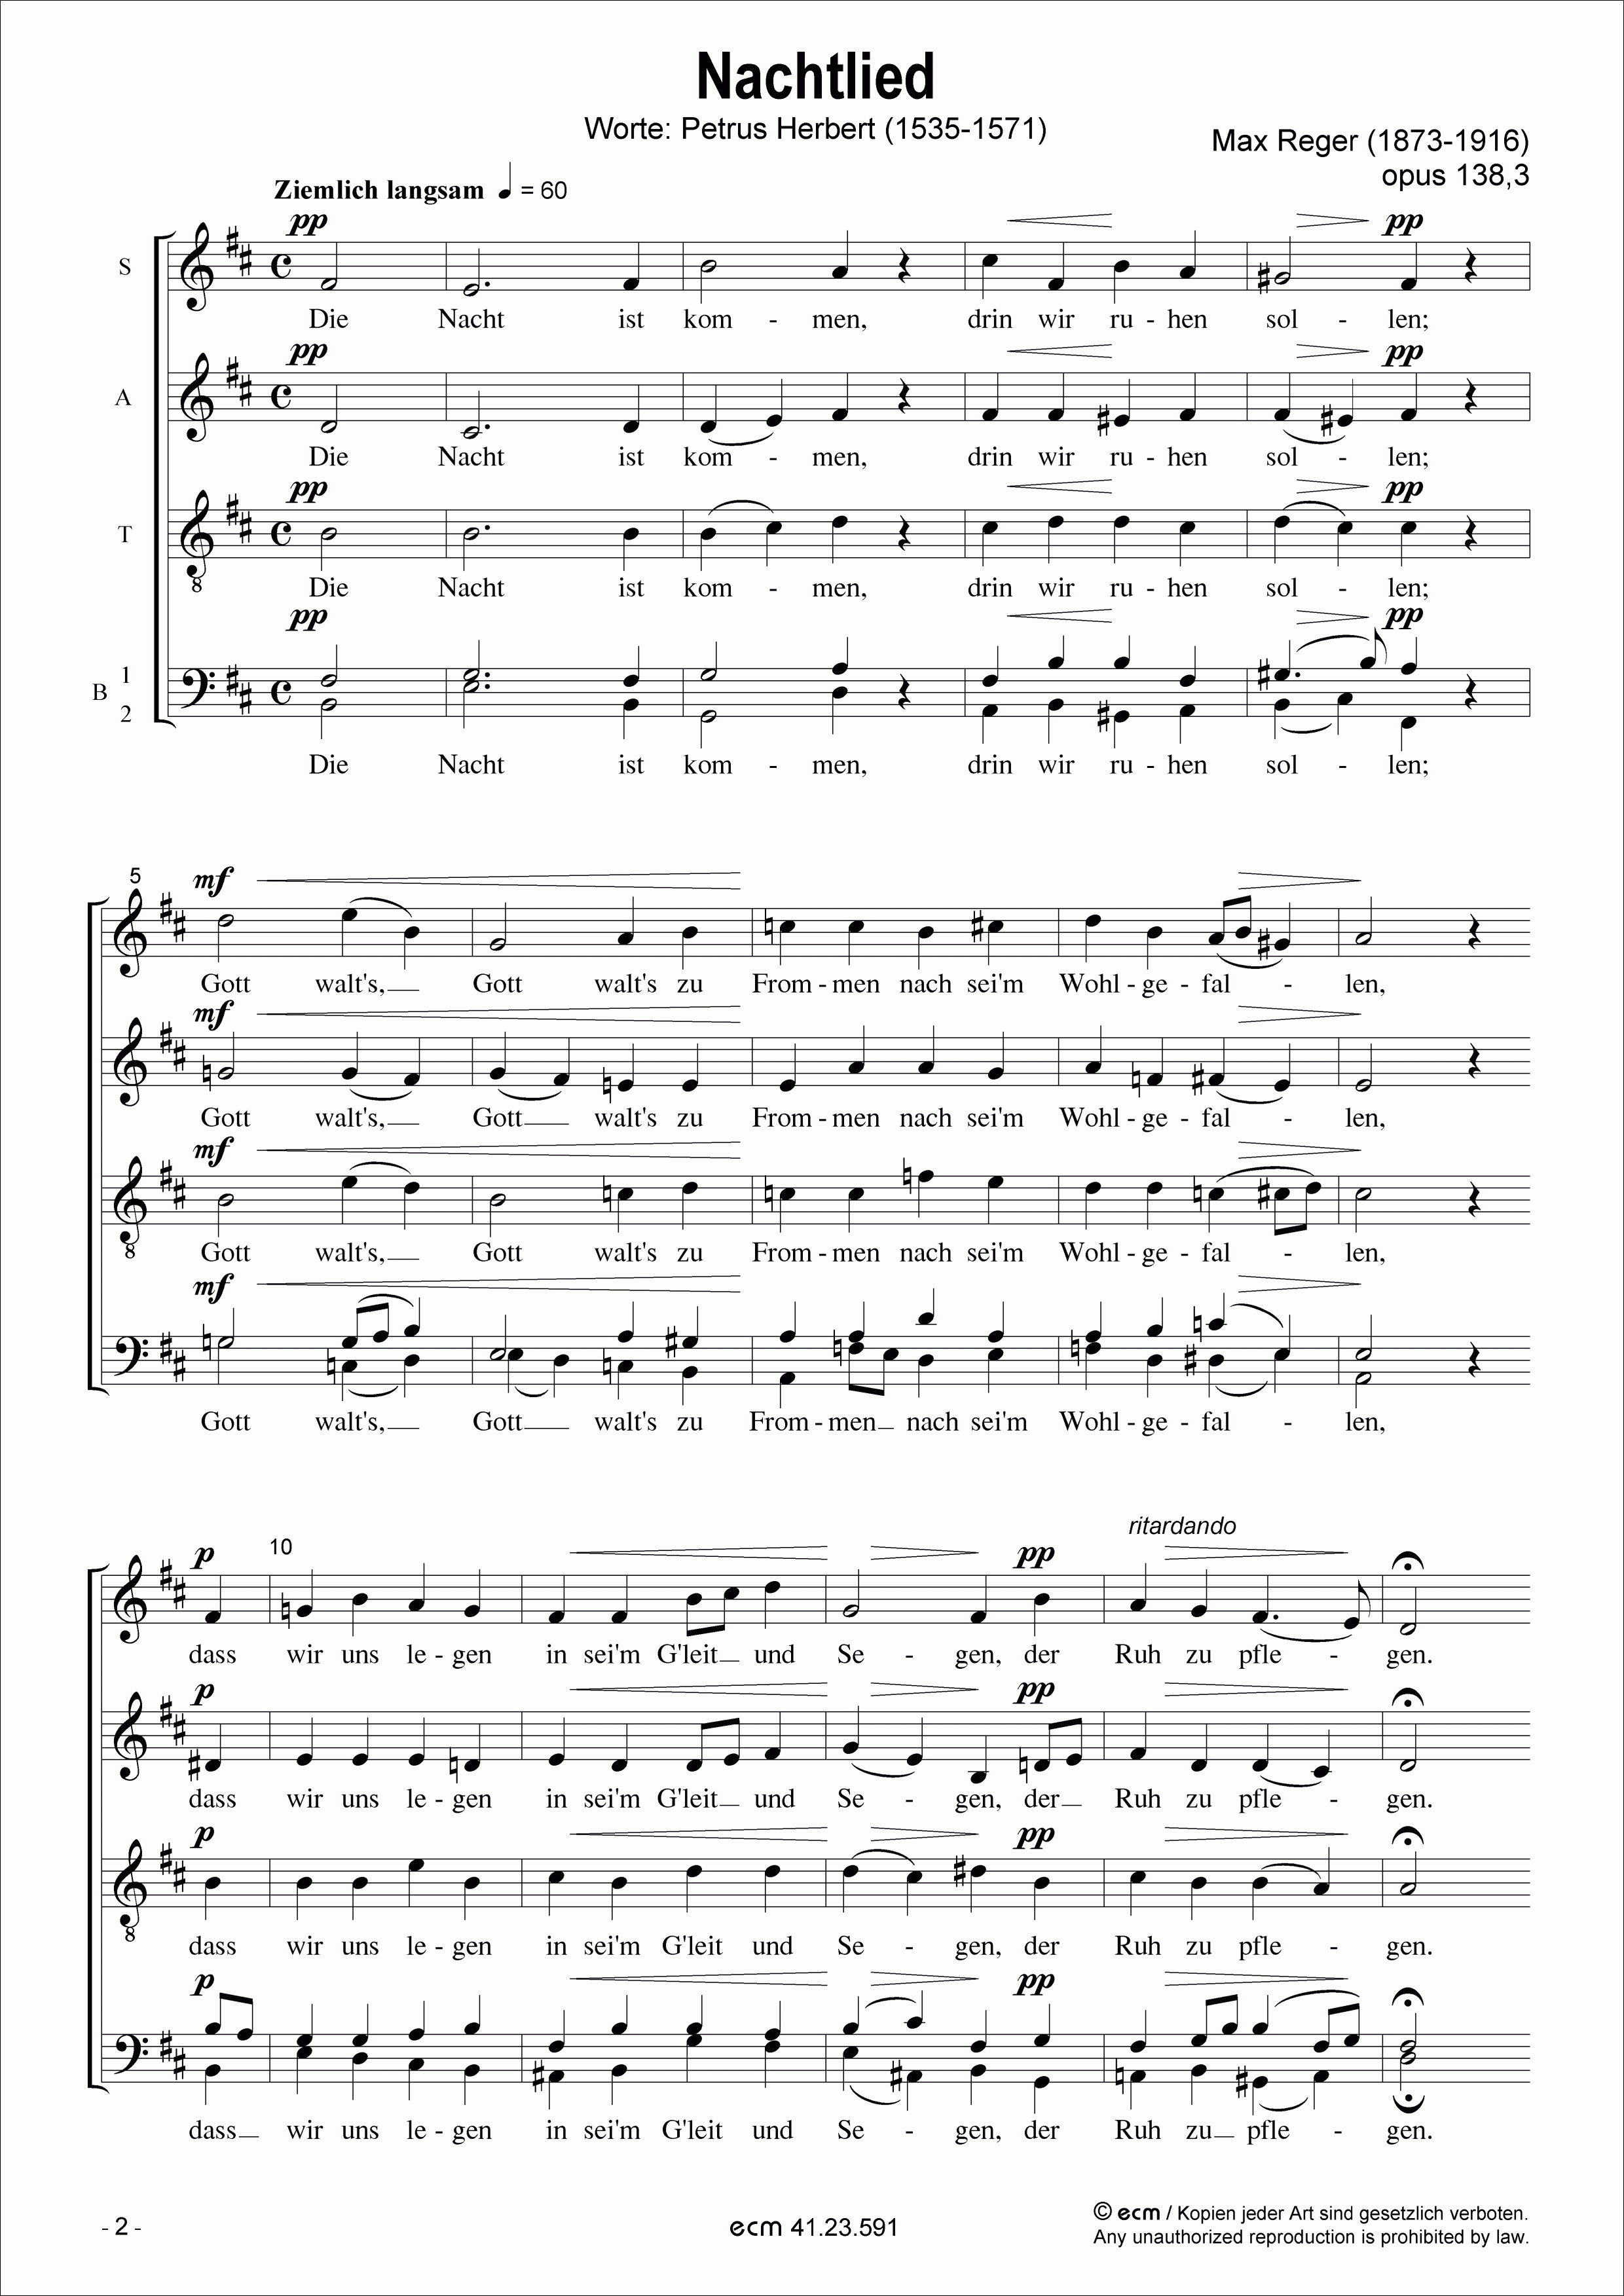 Nachtlied (op. 138,3)